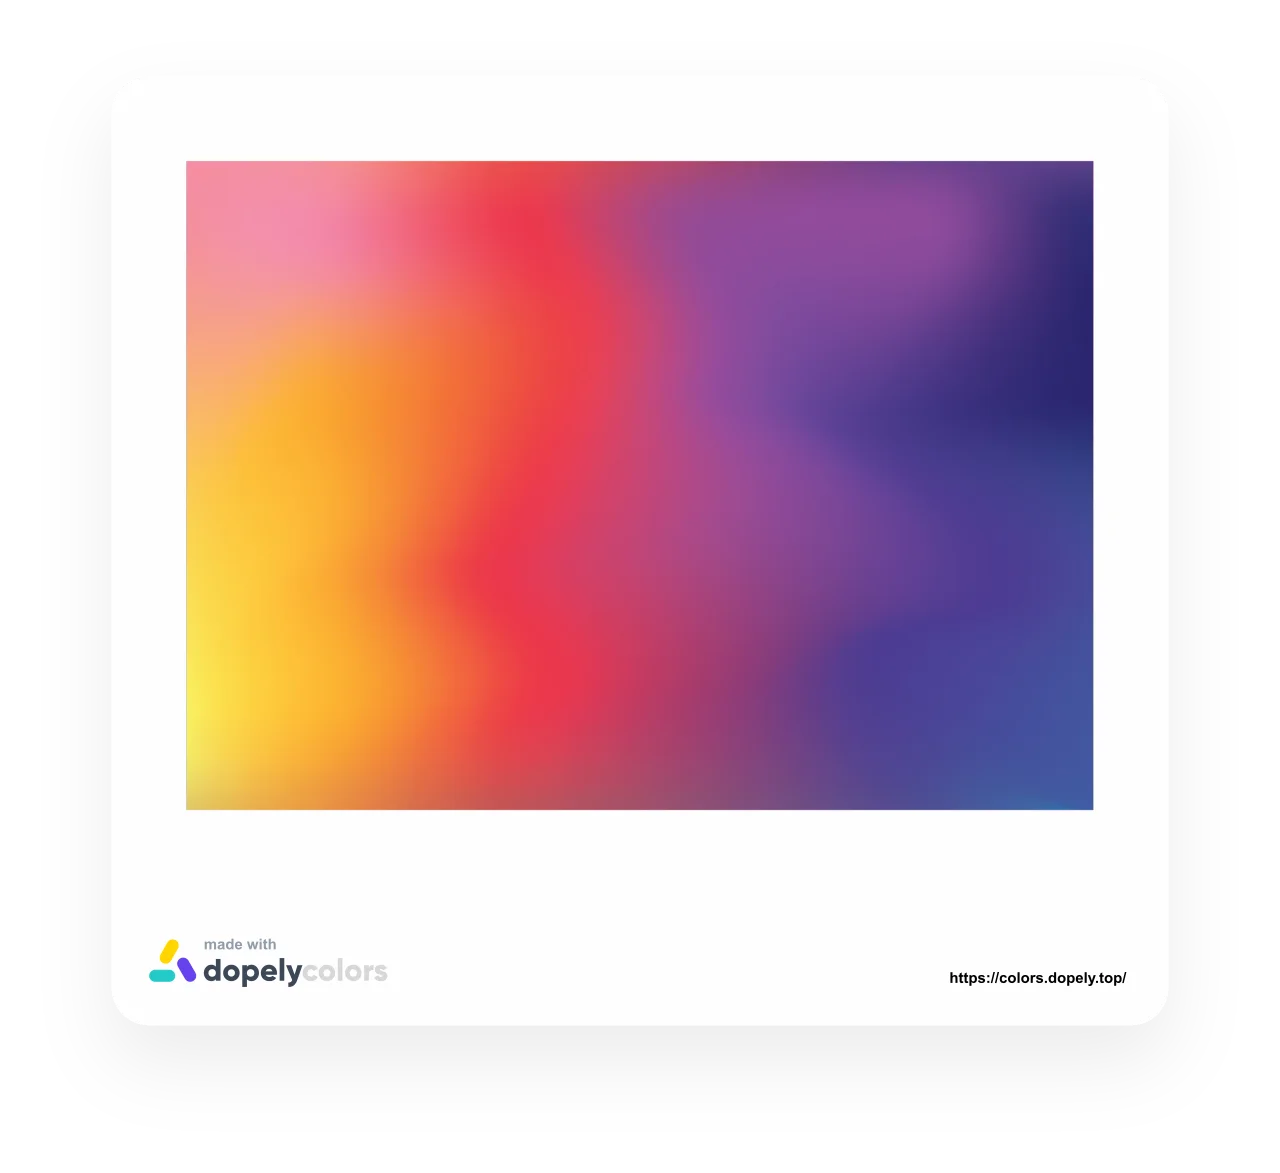 Color Gradient Generator cho phép bạn tạo ra các hiệu ứng chuyển đổi màu sắc phù hợp với các yếu tố khác trên trang web của bạn. Xem hình ảnh để khám phá các tính năng hấp dẫn của công cụ này.